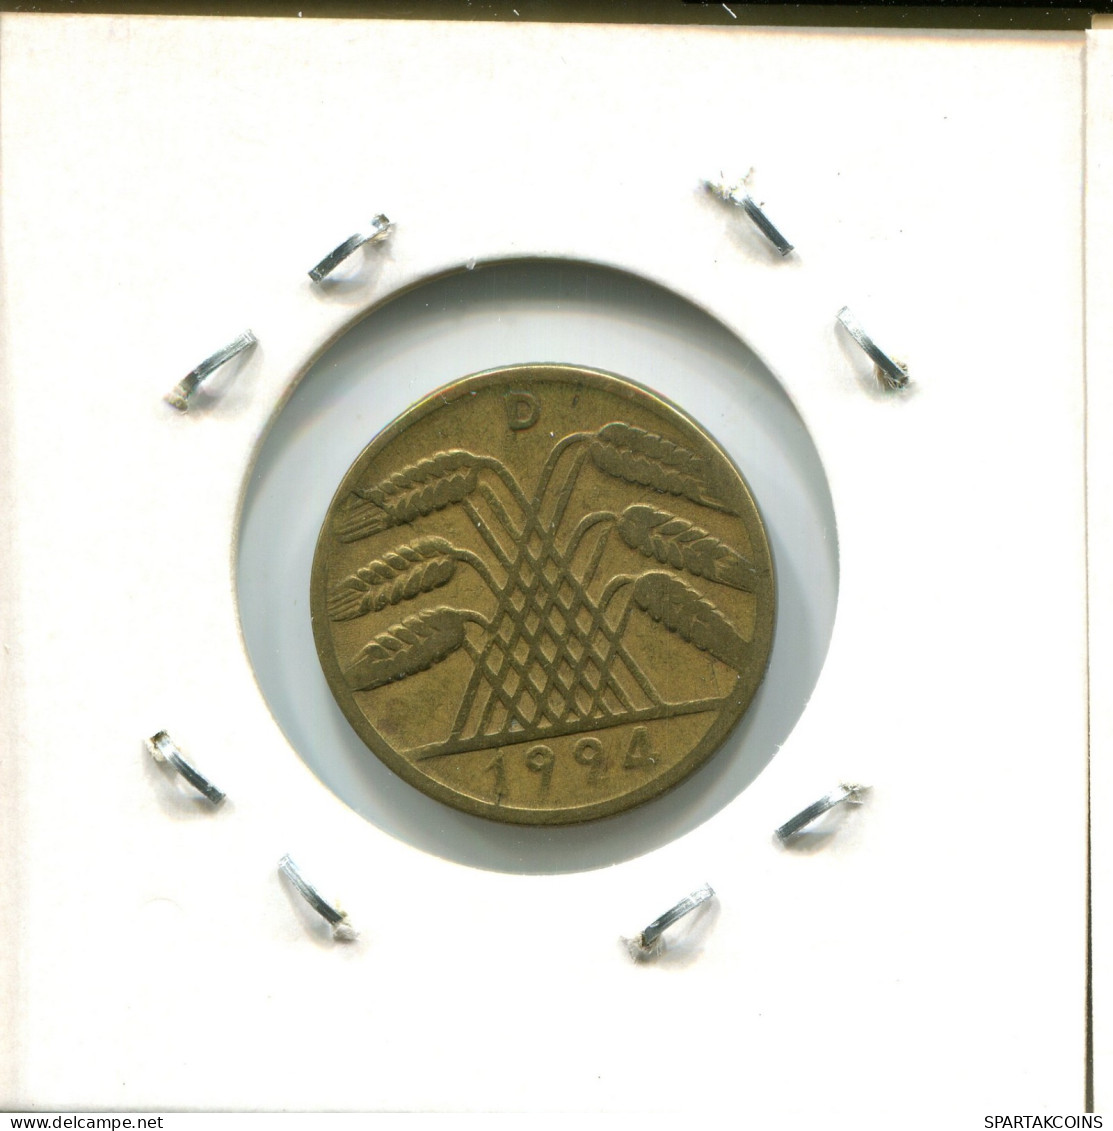 10 REISCHPFENNIG 1924 D ALEMANIA Moneda GERMANY #AW459.E.A - 10 Rentenpfennig & 10 Reichspfennig